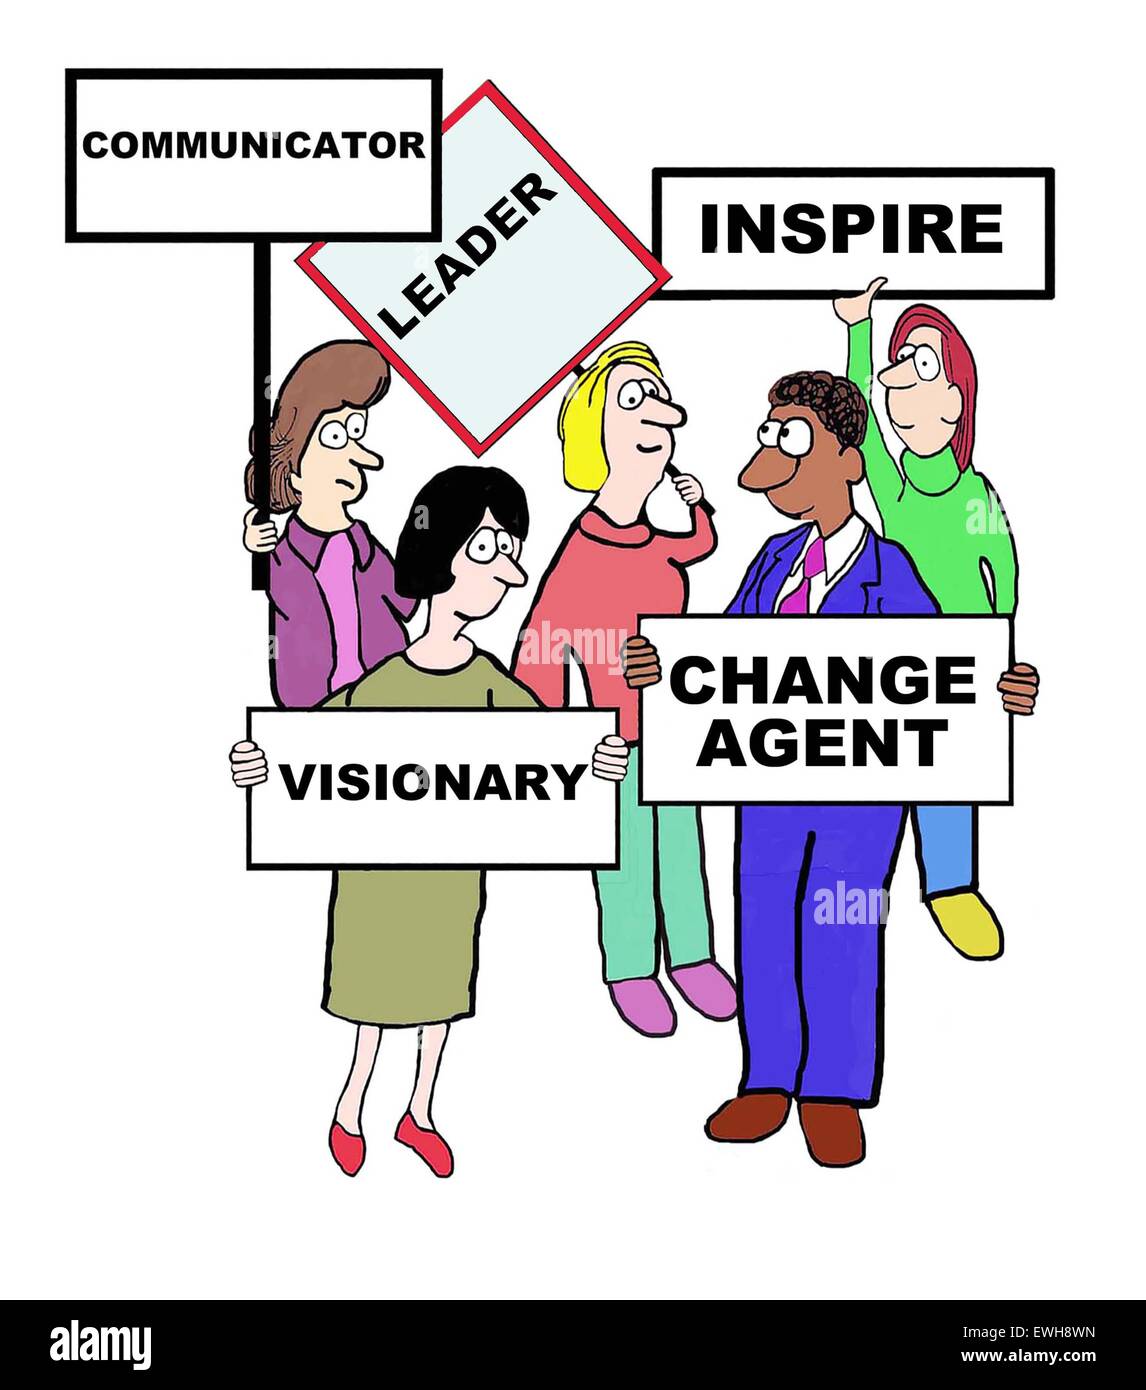 Business-Cartoon von Menschen halten Zeichen definieren "Führer: Communicator, inspirieren, Agent, visionäre zu ändern". Stockfoto